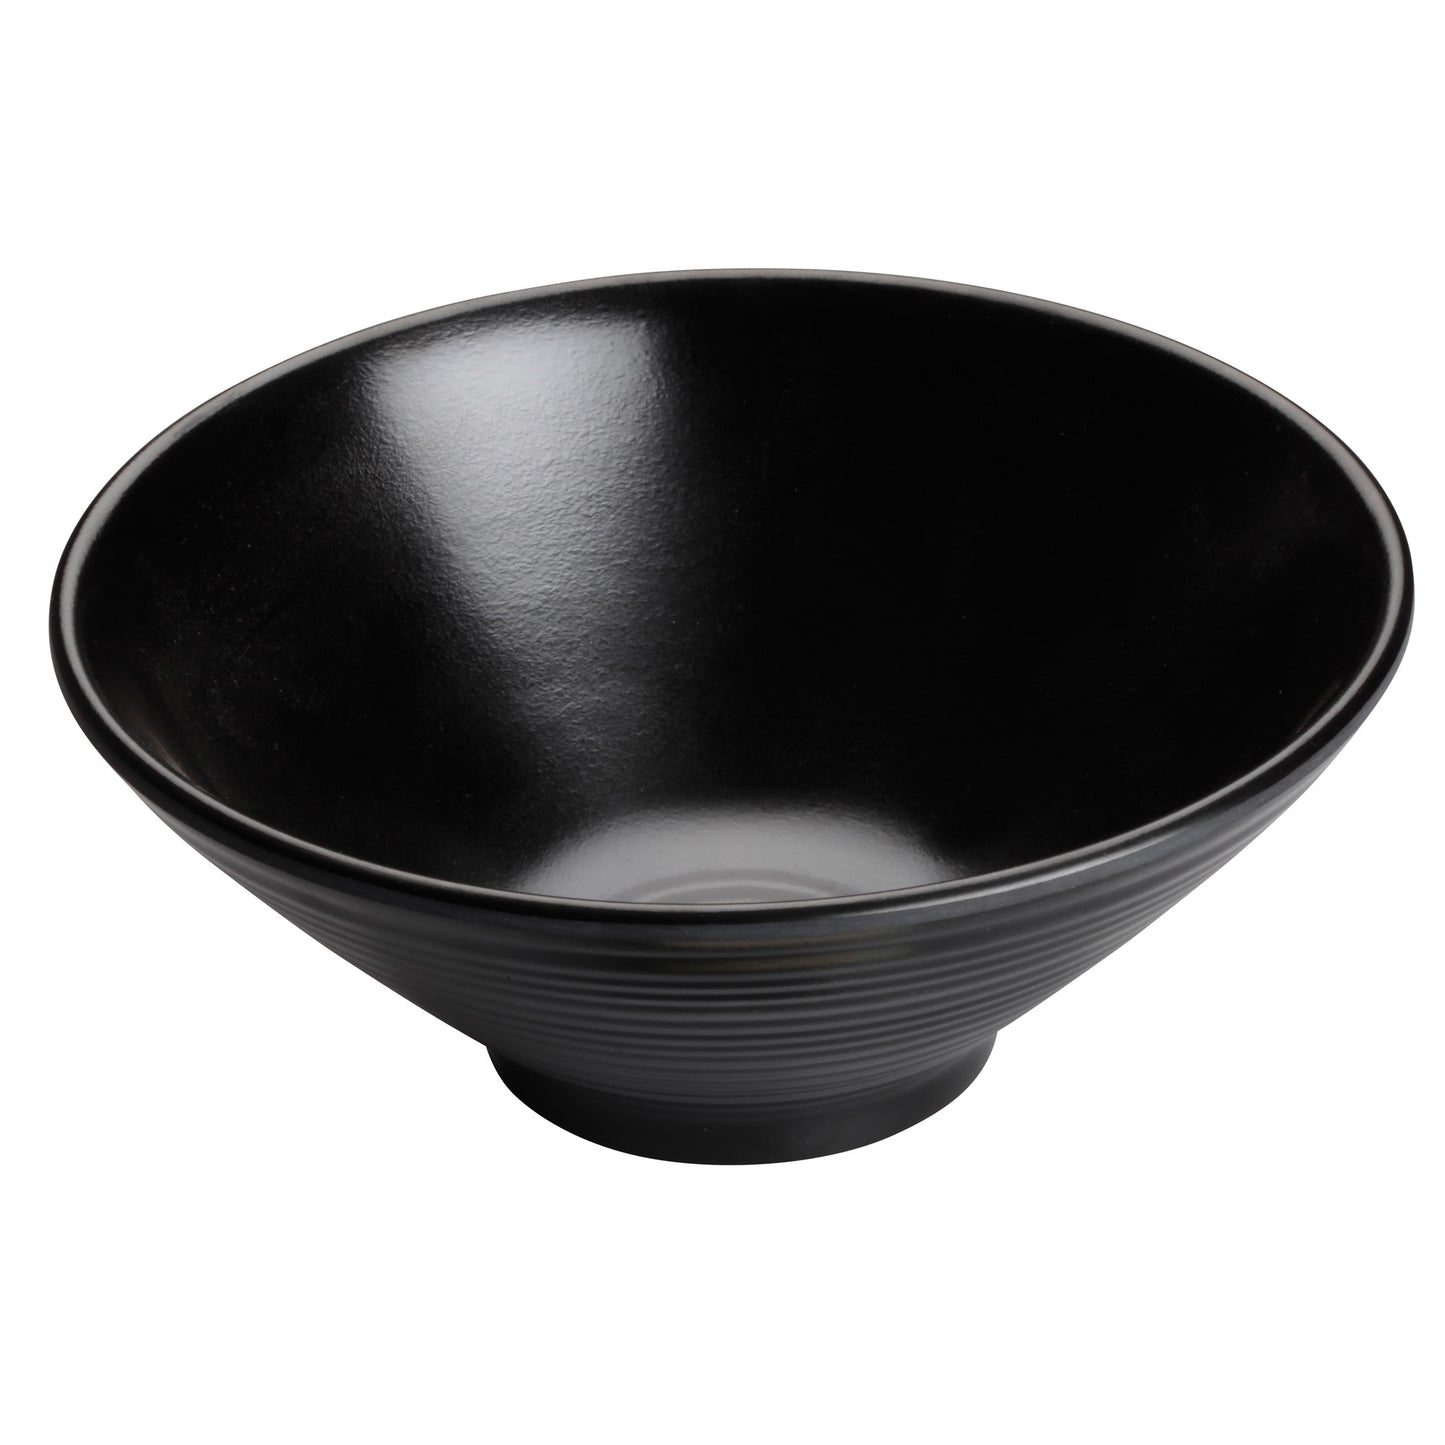 WDM014-302 - 6-7/8"Dia Melamine Bowl, Black, 24pcs/case